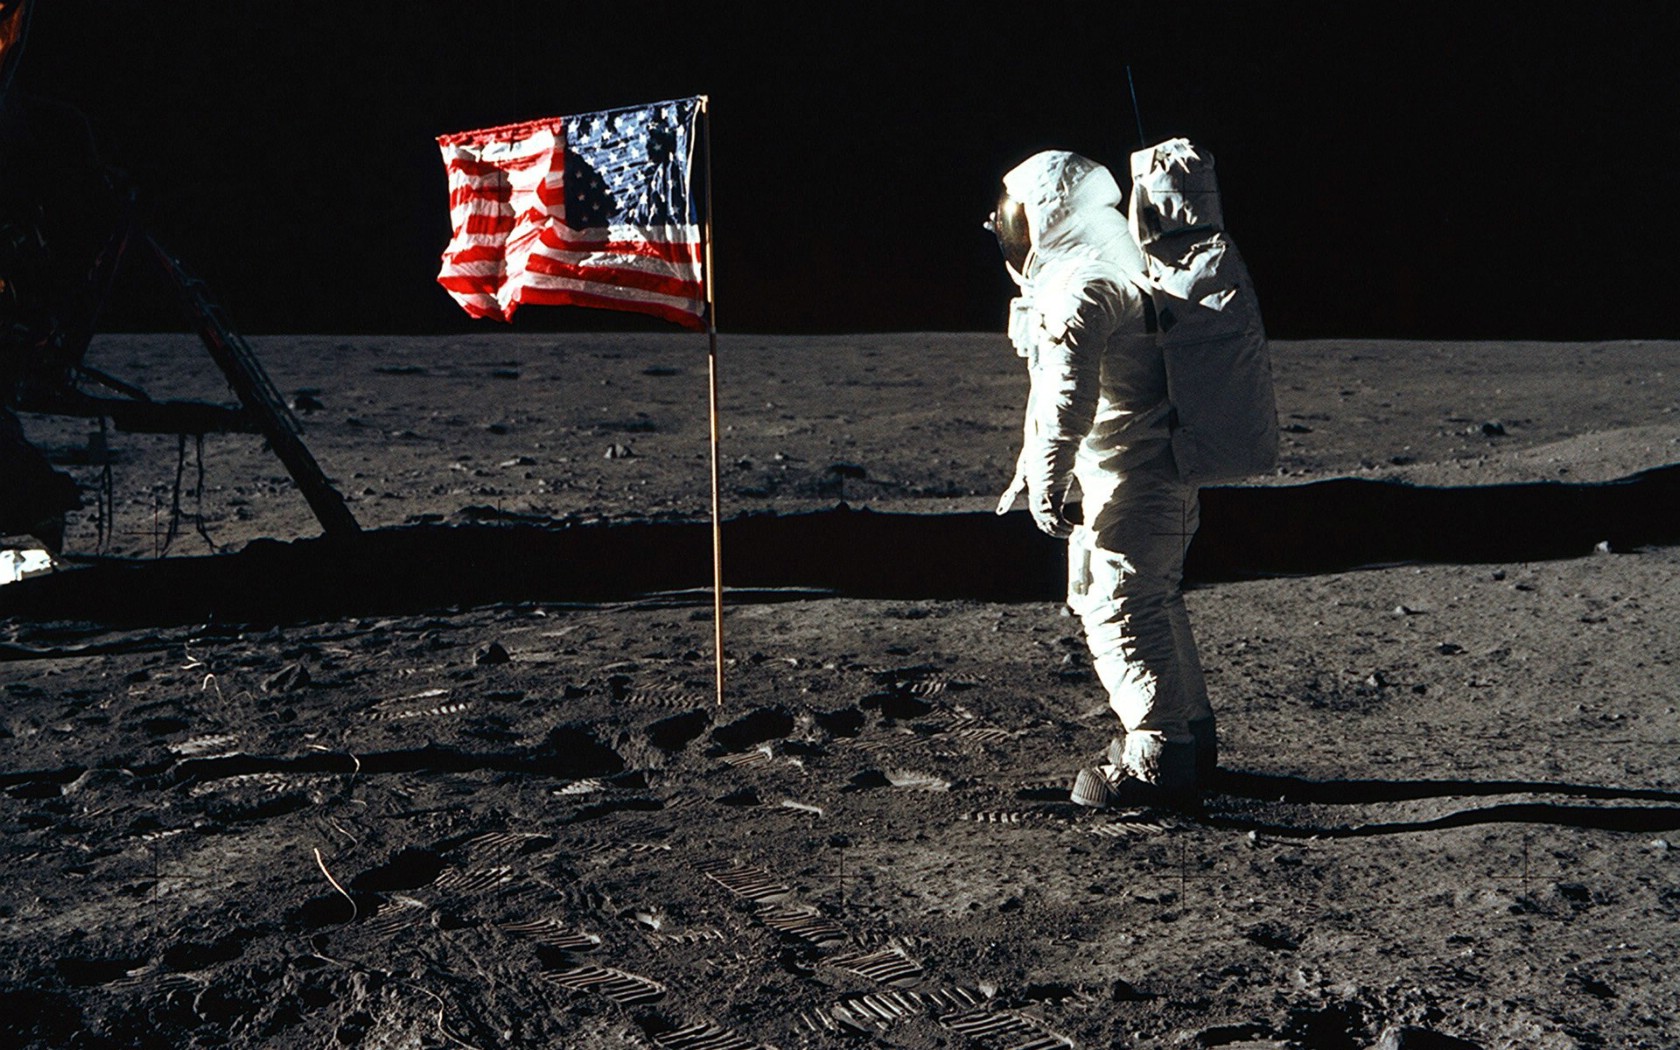 壁纸1680x1050One Giant Leap for Mankind  Buzz Aldrin and the U S flag on the Moon 巴兹 奥尔德林和国旗壁纸 阿波罗11号登月40周年纪念壁纸壁纸 阿波罗11号登月40周年纪念壁纸图片 阿波罗11号登月40周年纪念壁纸素材 人文壁纸 人文图库 人文图片素材桌面壁纸